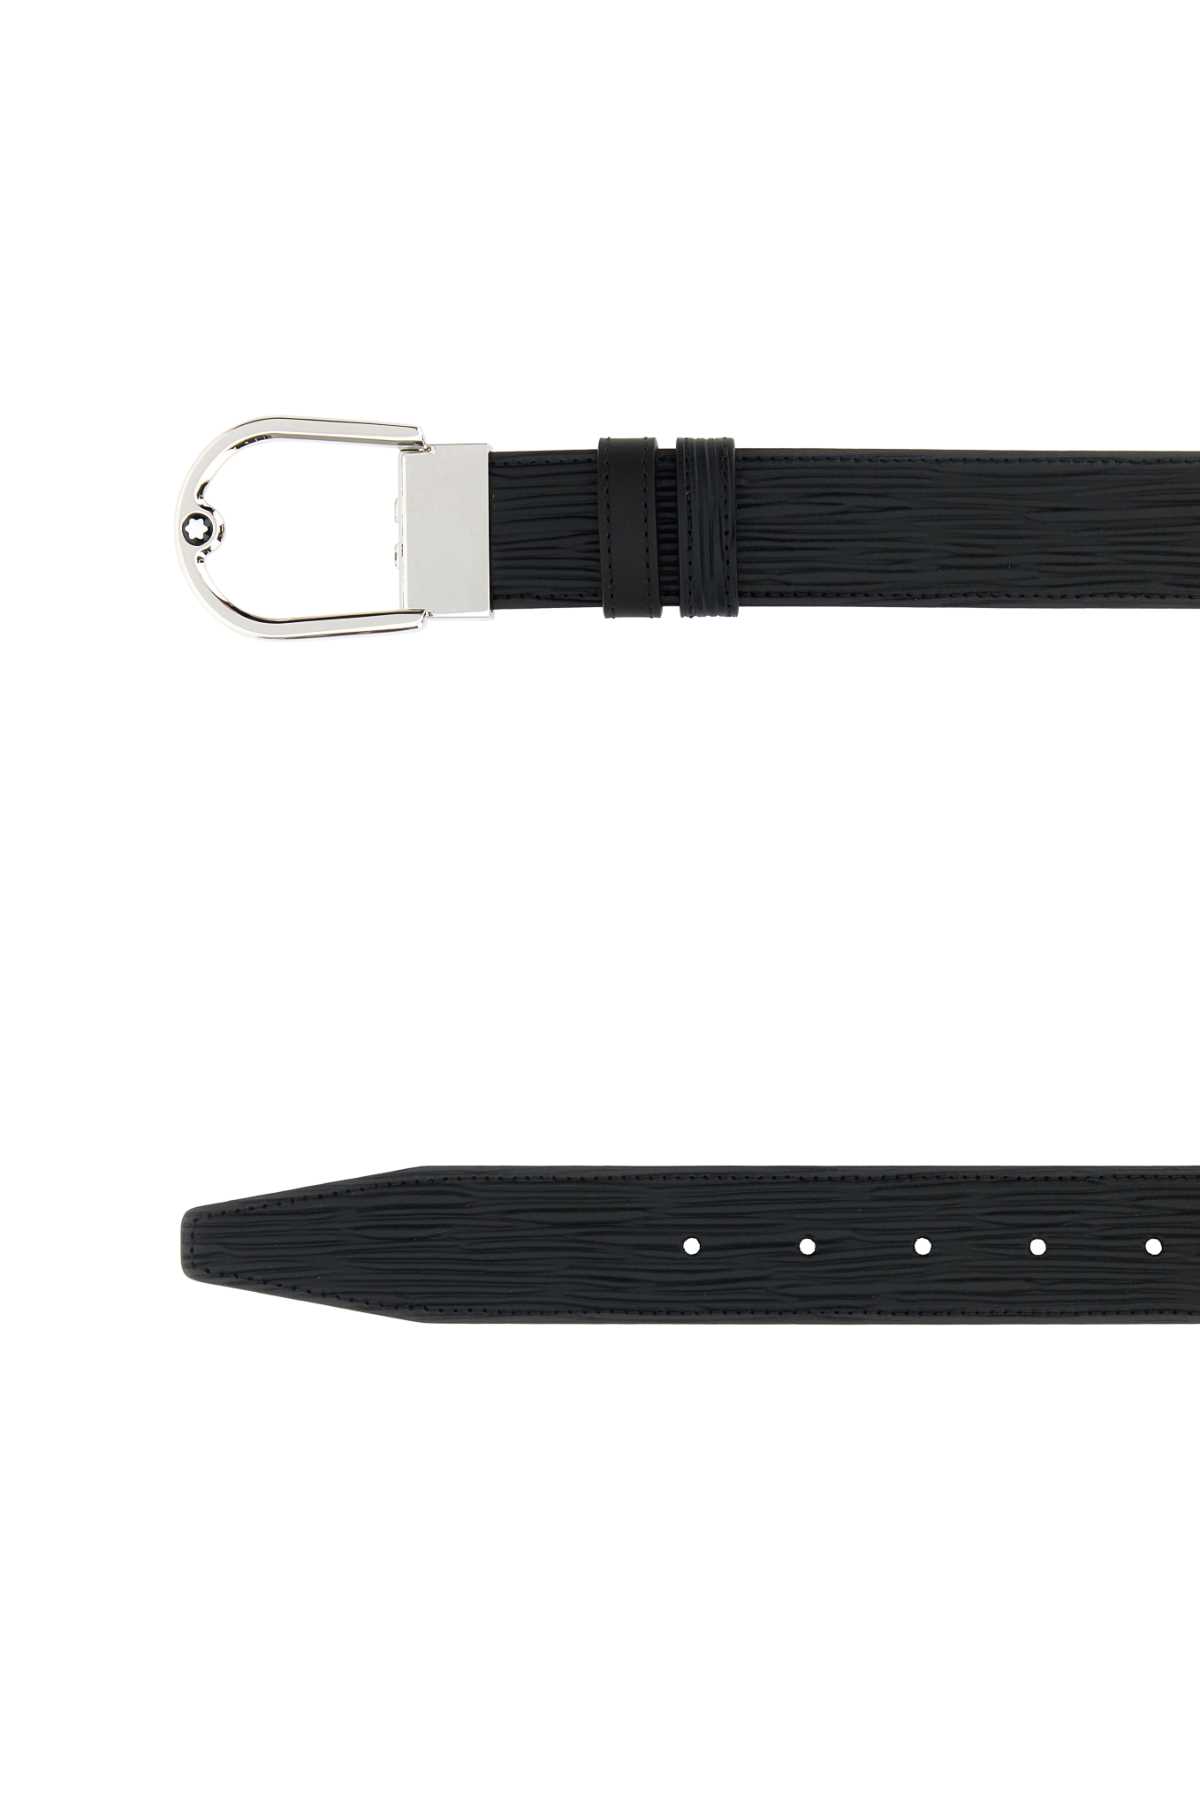 Shop Montblanc Black Leather Belt